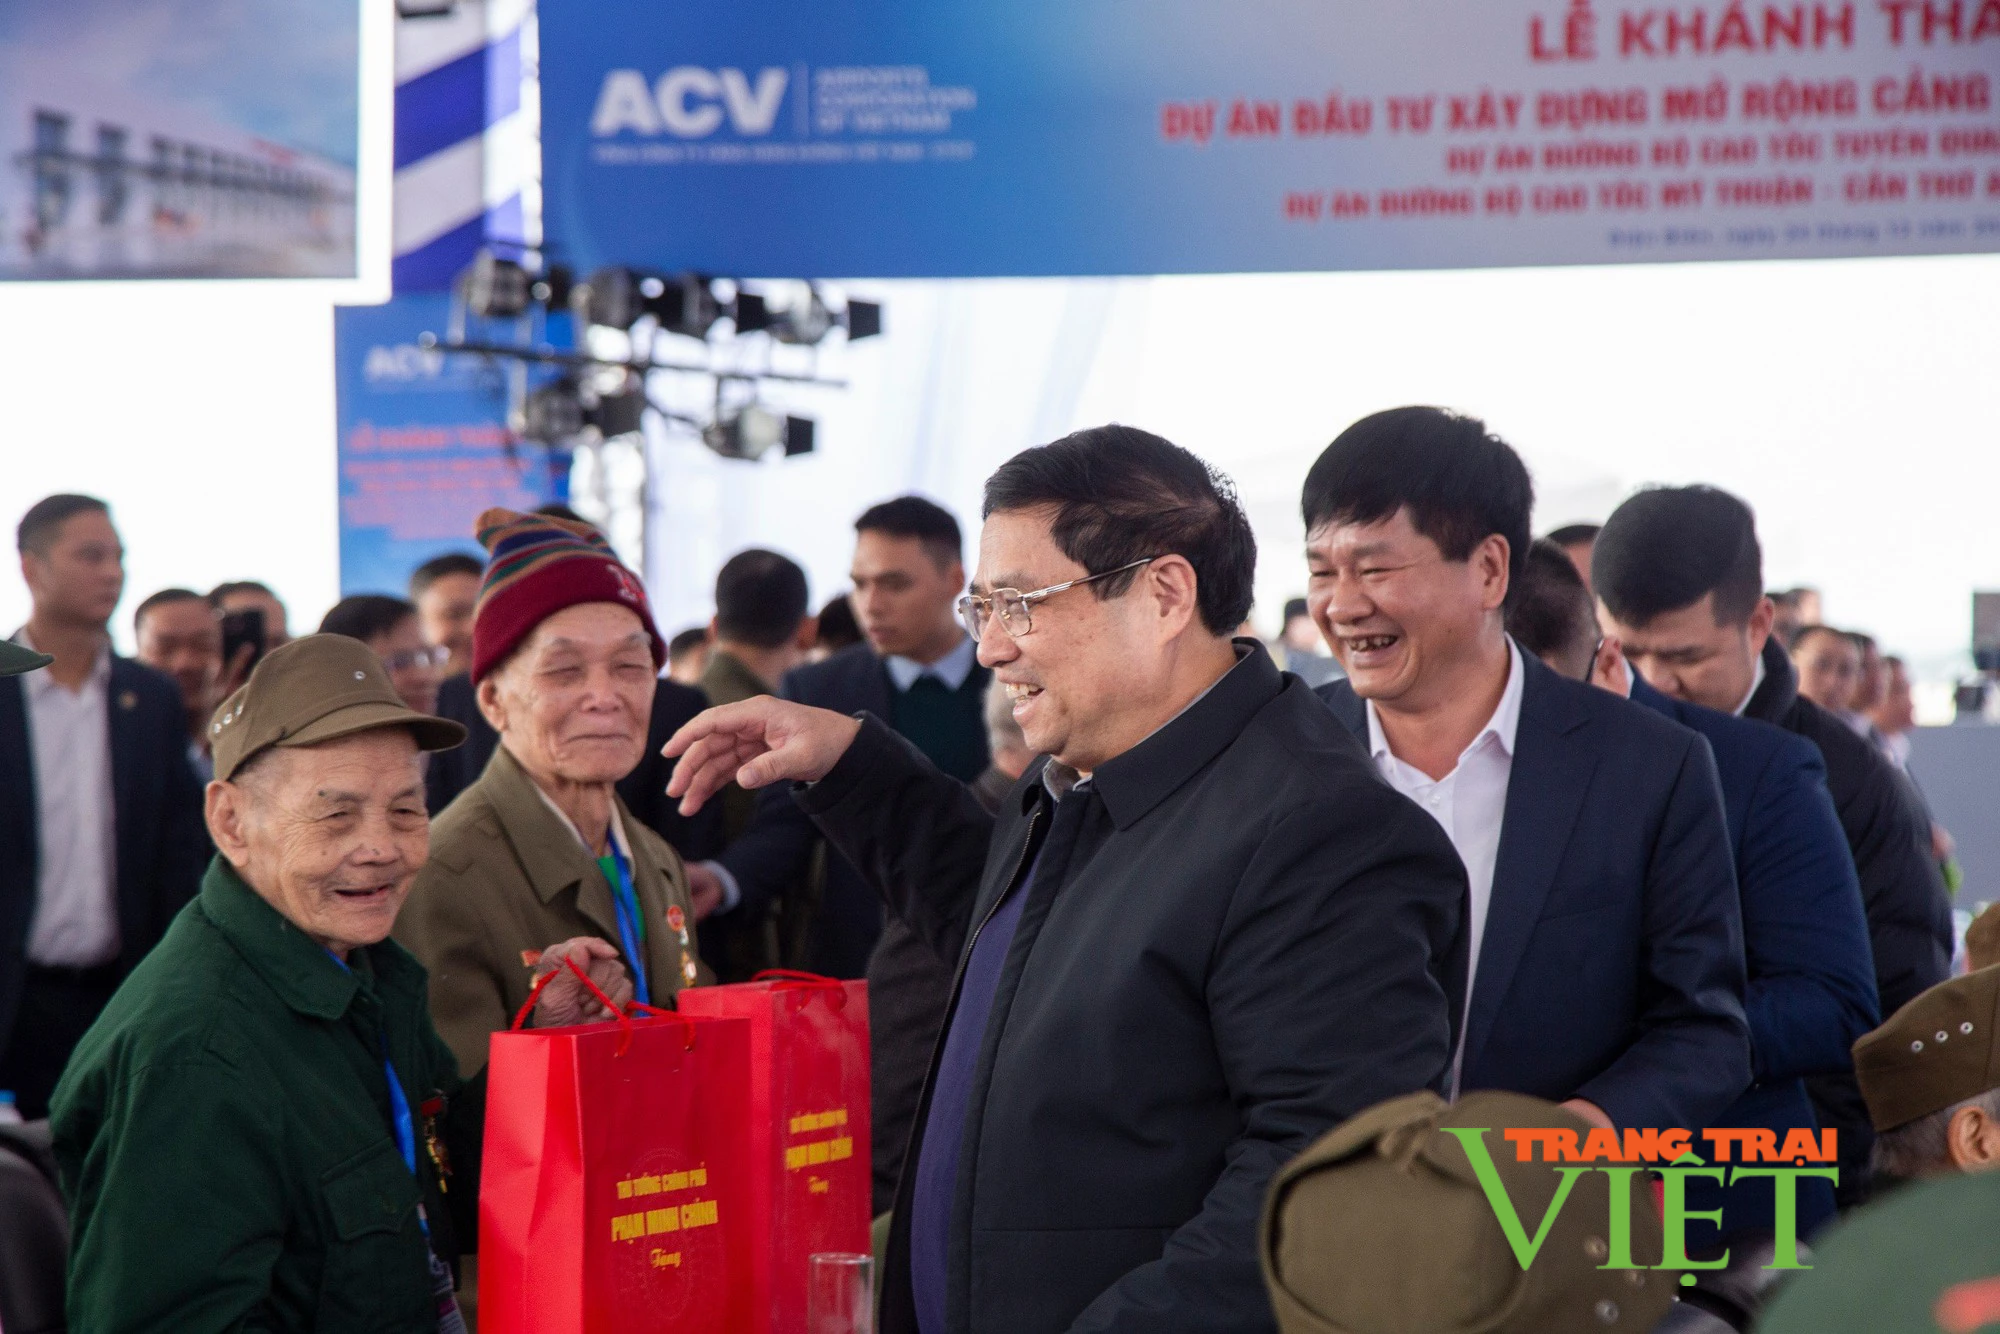 Thủ tướng Chính Phủ Phạm Minh Chính cắt băng khánh thành Dự án đầu tư xây dựng mở rộng Cảng hàng không Điện Biên  - Ảnh 4.